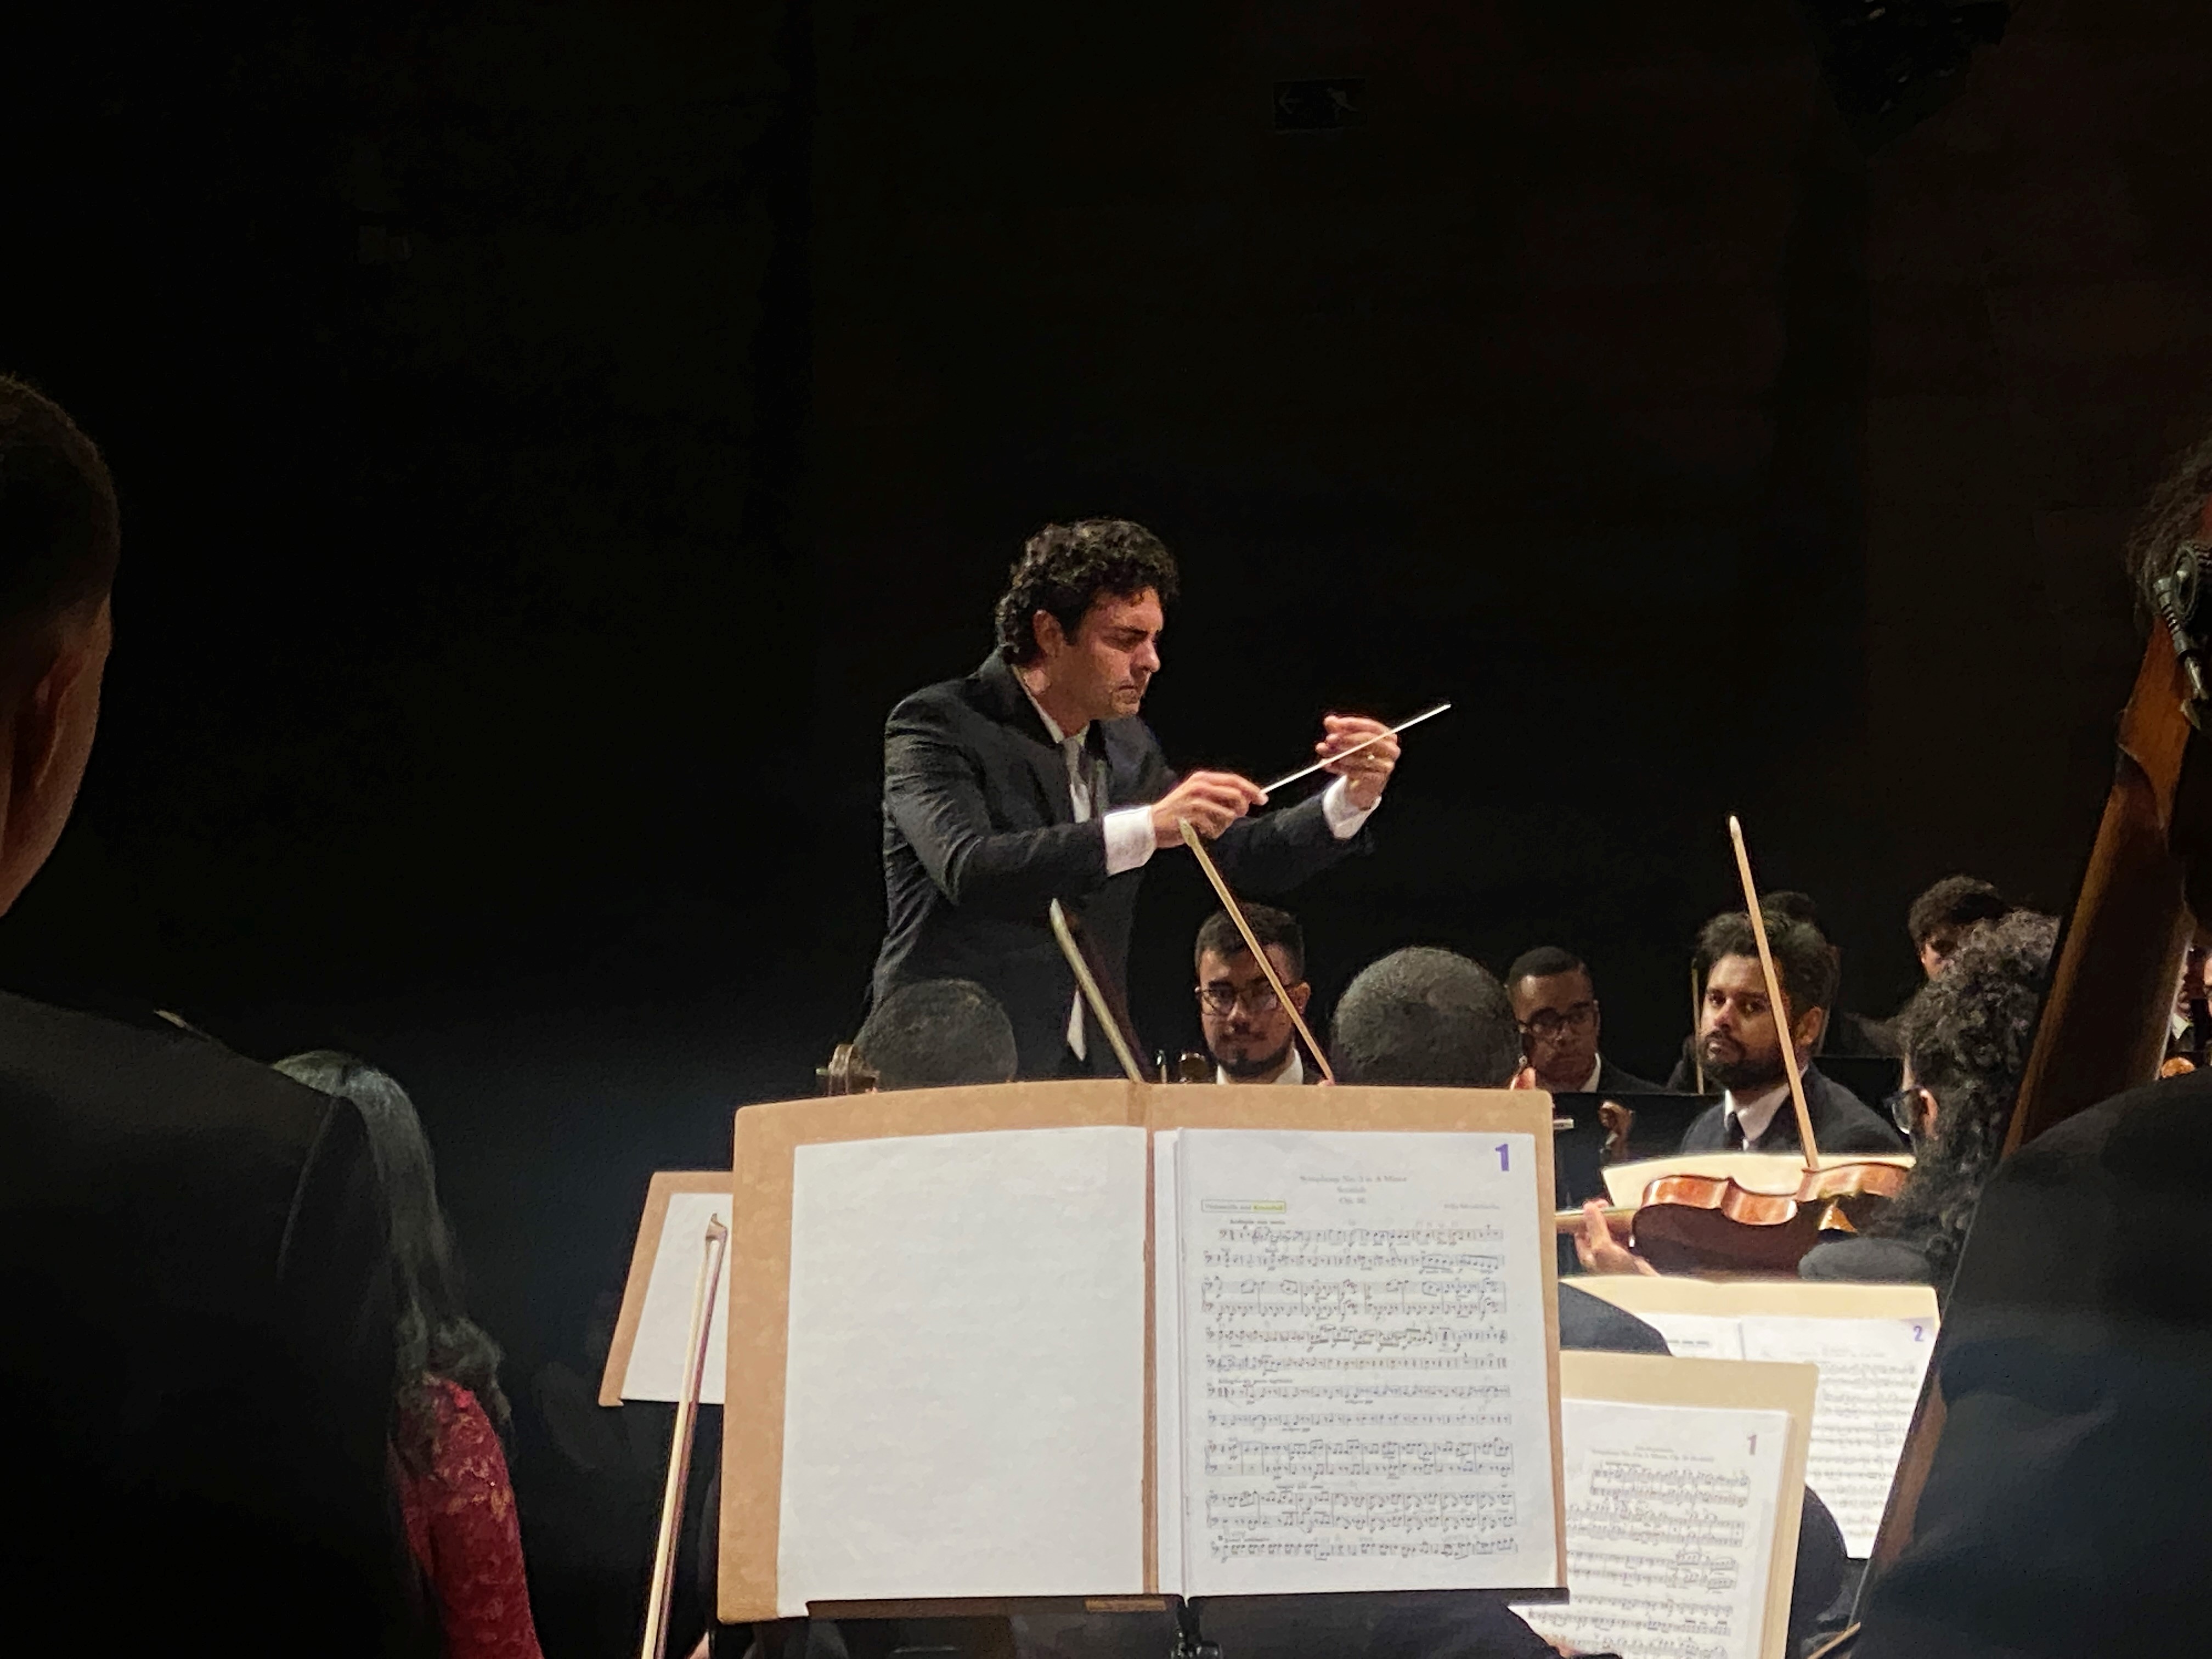 Orquestra da maior favela paulista apresenta Mozart e Mendelssohn no Teatro B32, no domingo (21/04), às 17h